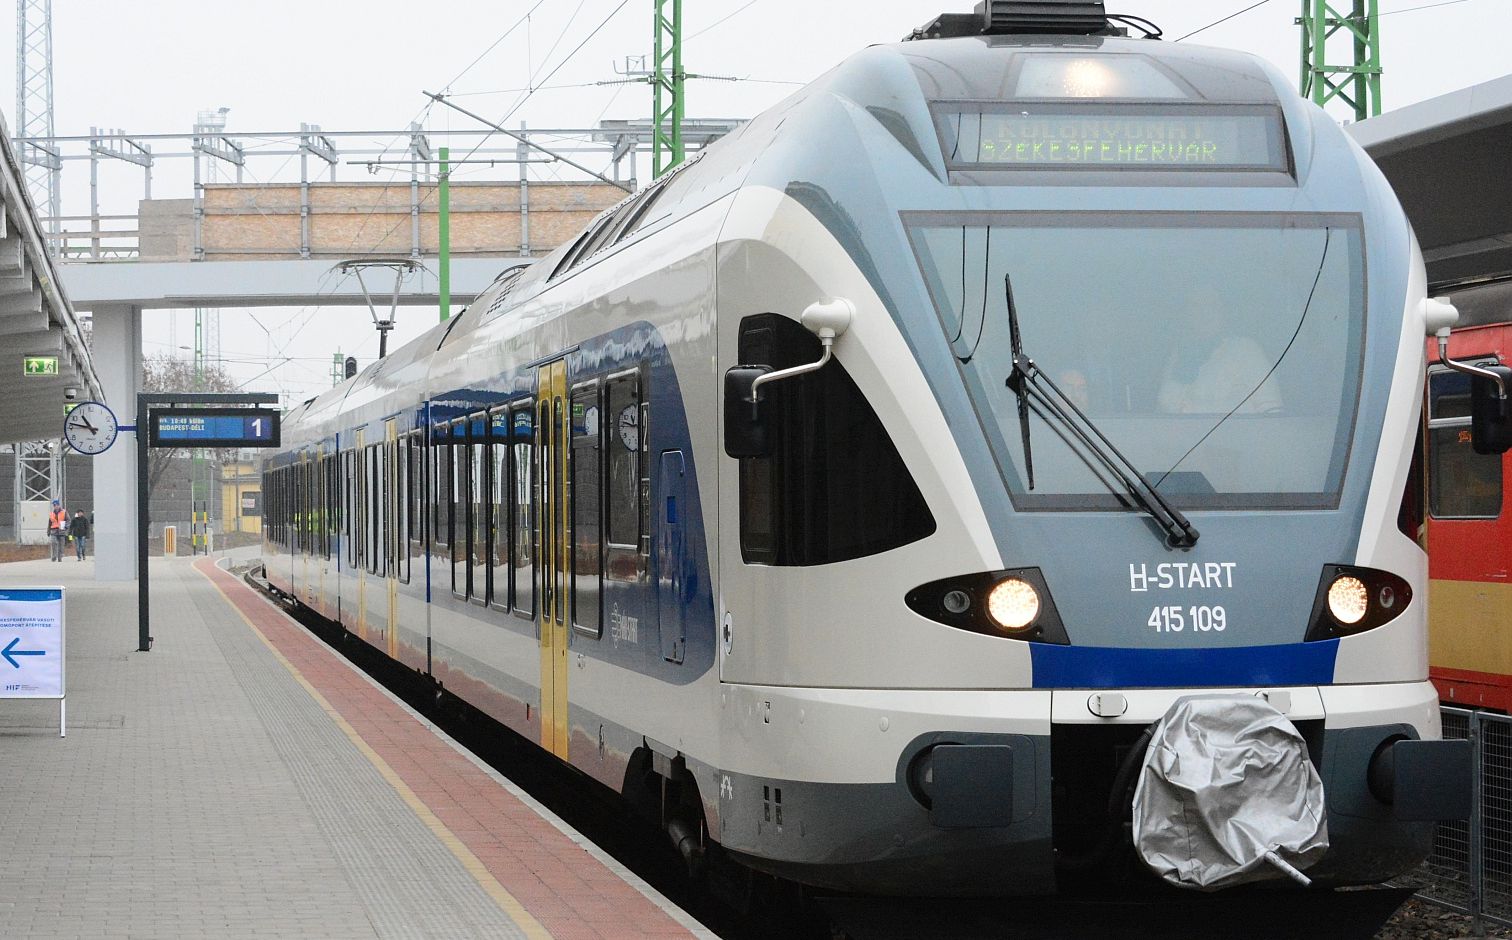 Pályakarbantartási munkálatok miatt módosított menetrend szerint közlekednek a vonatok a Kápolnásnyék - Gárdony szakaszon